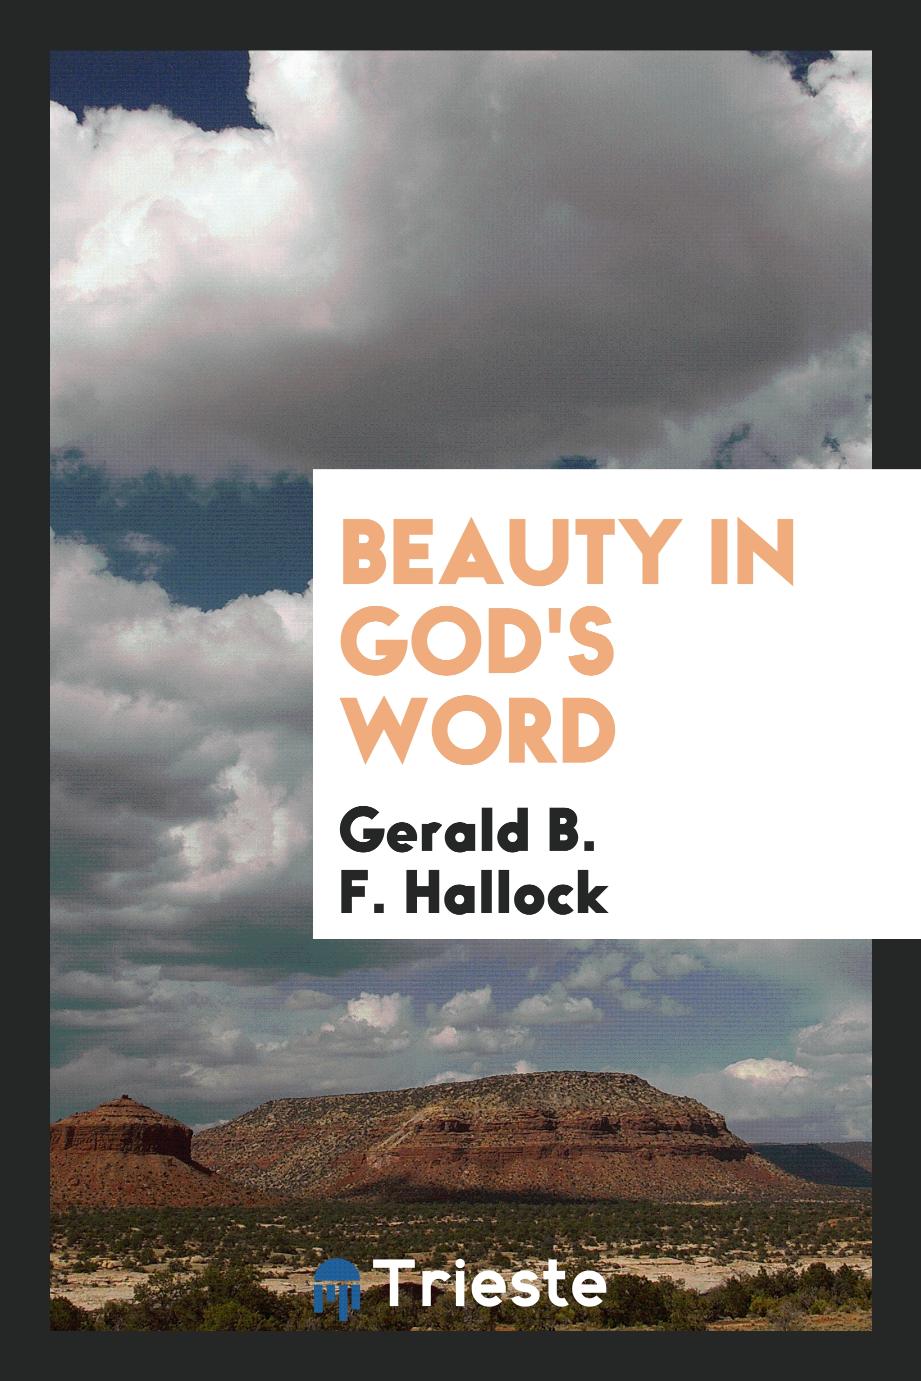 Beauty in God's word